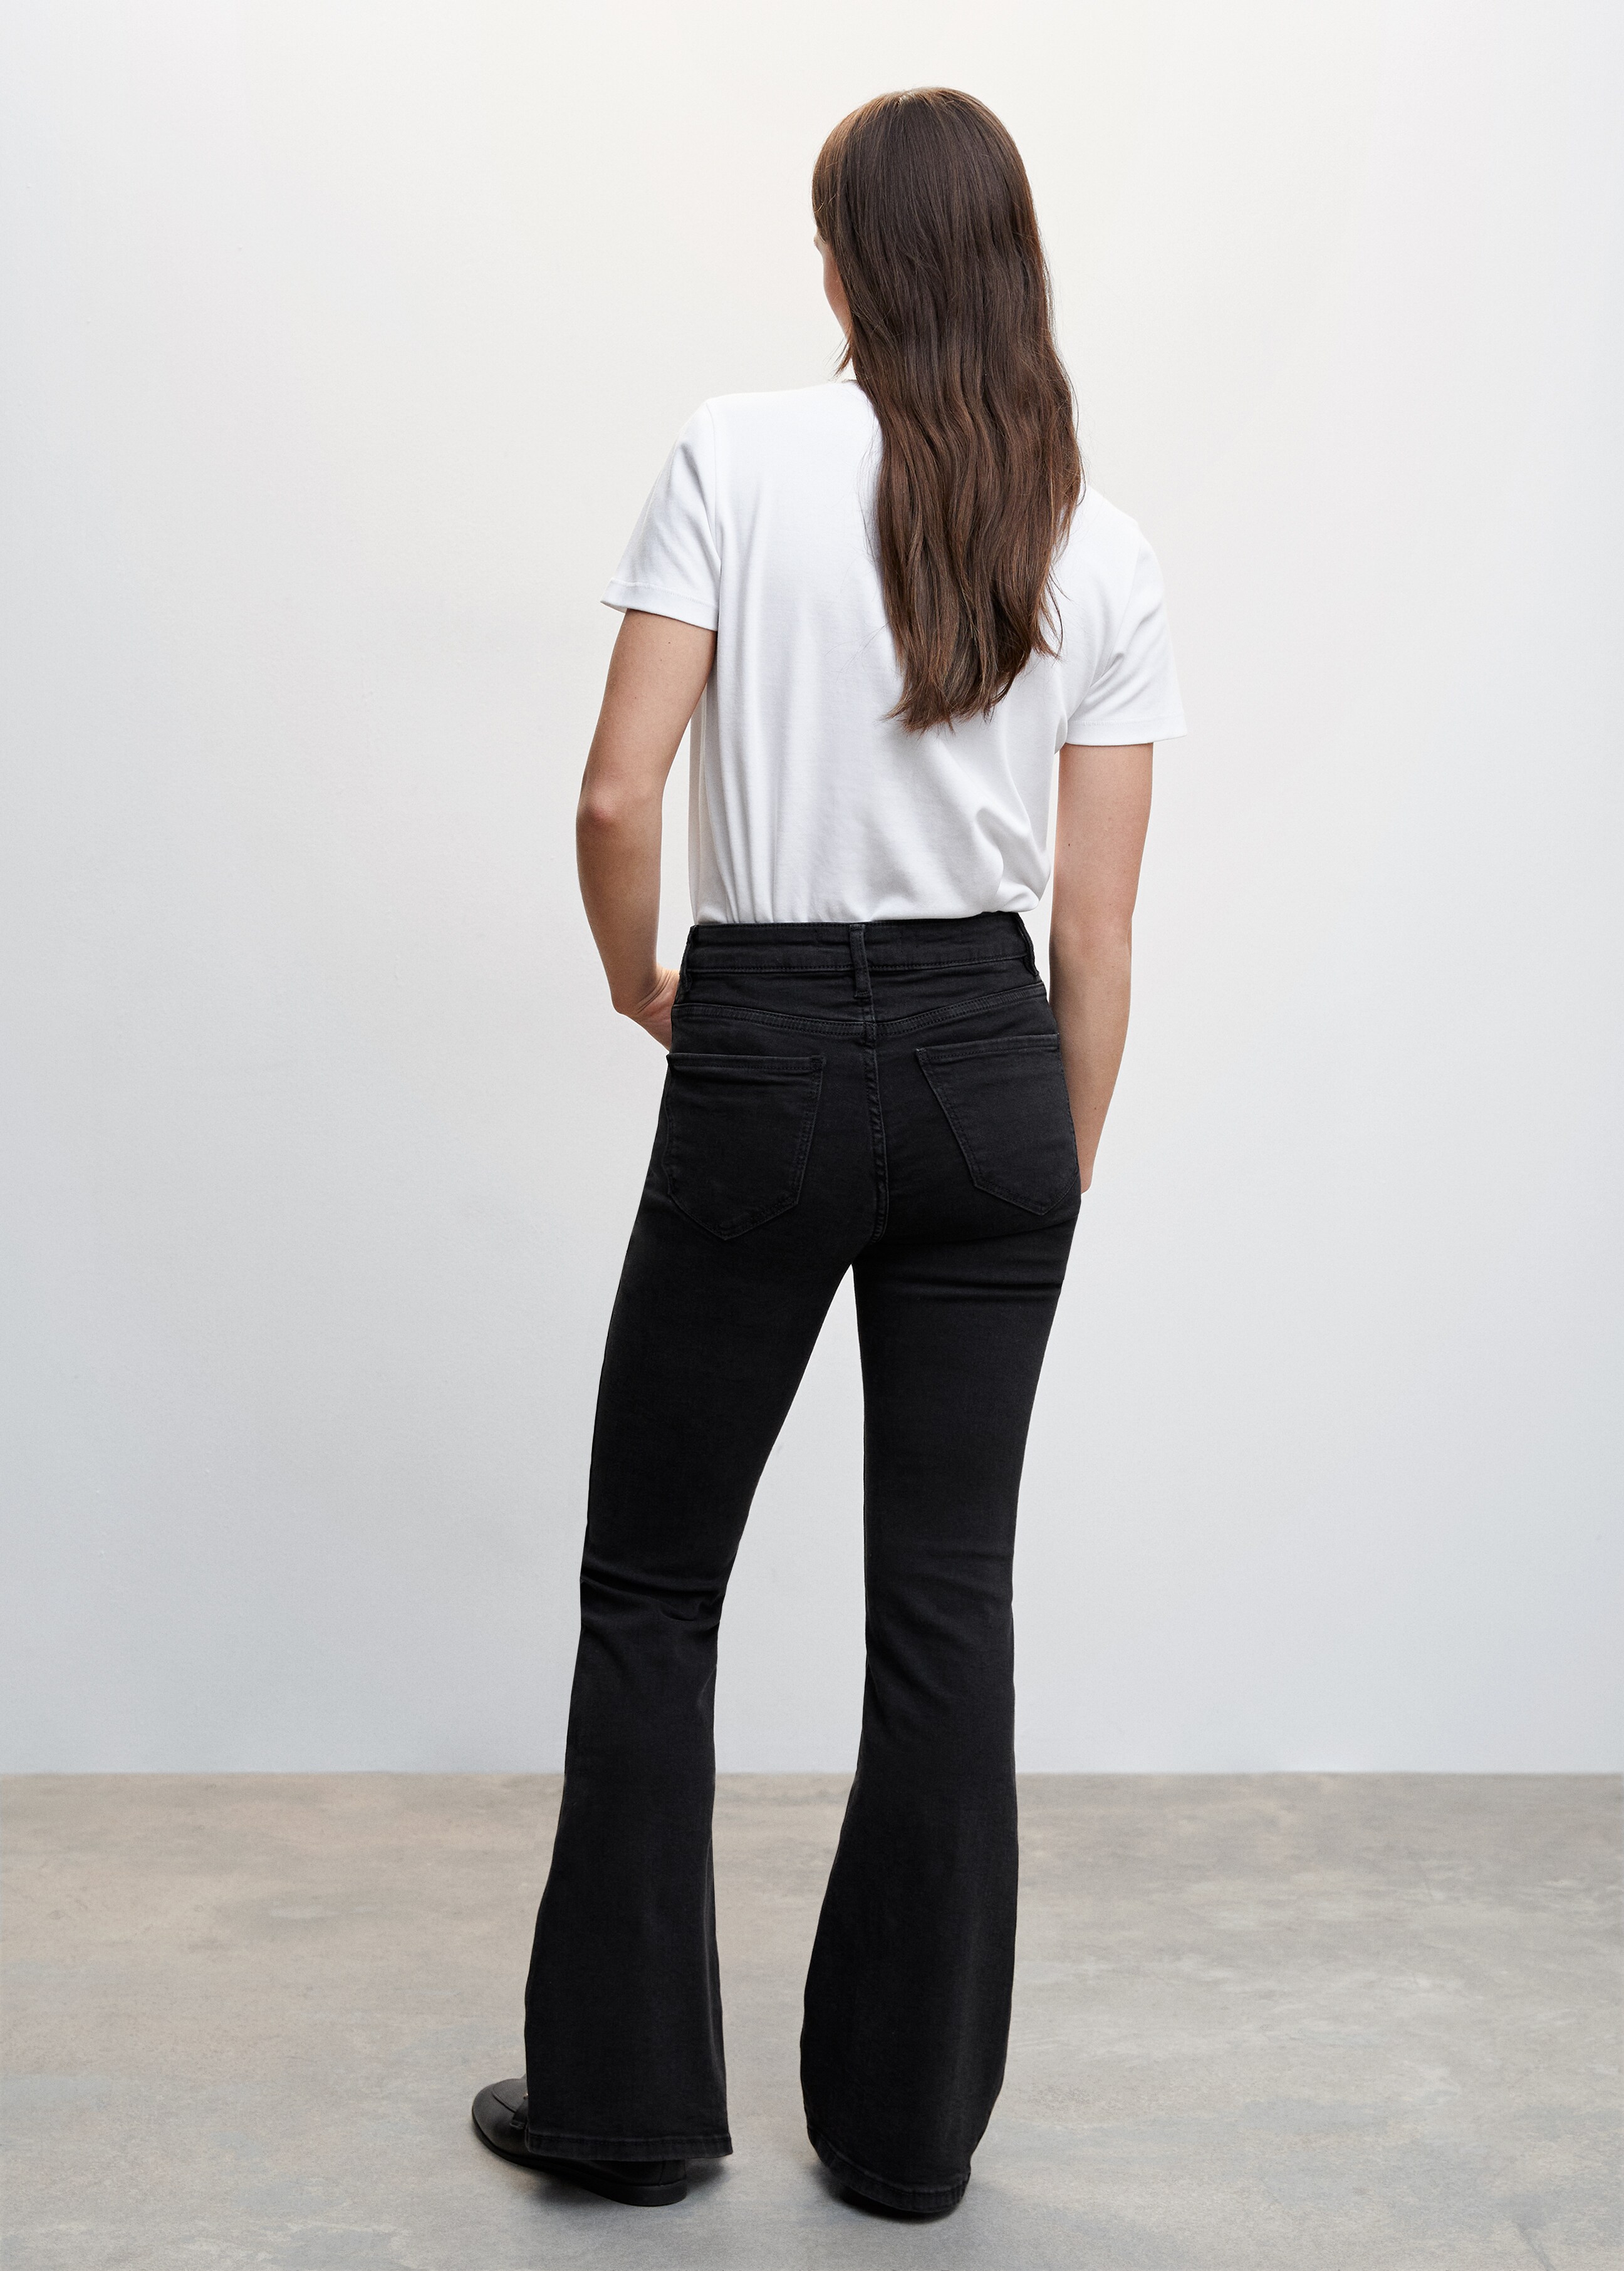 Jeans flare com cintura de altura média - Verso do artigo